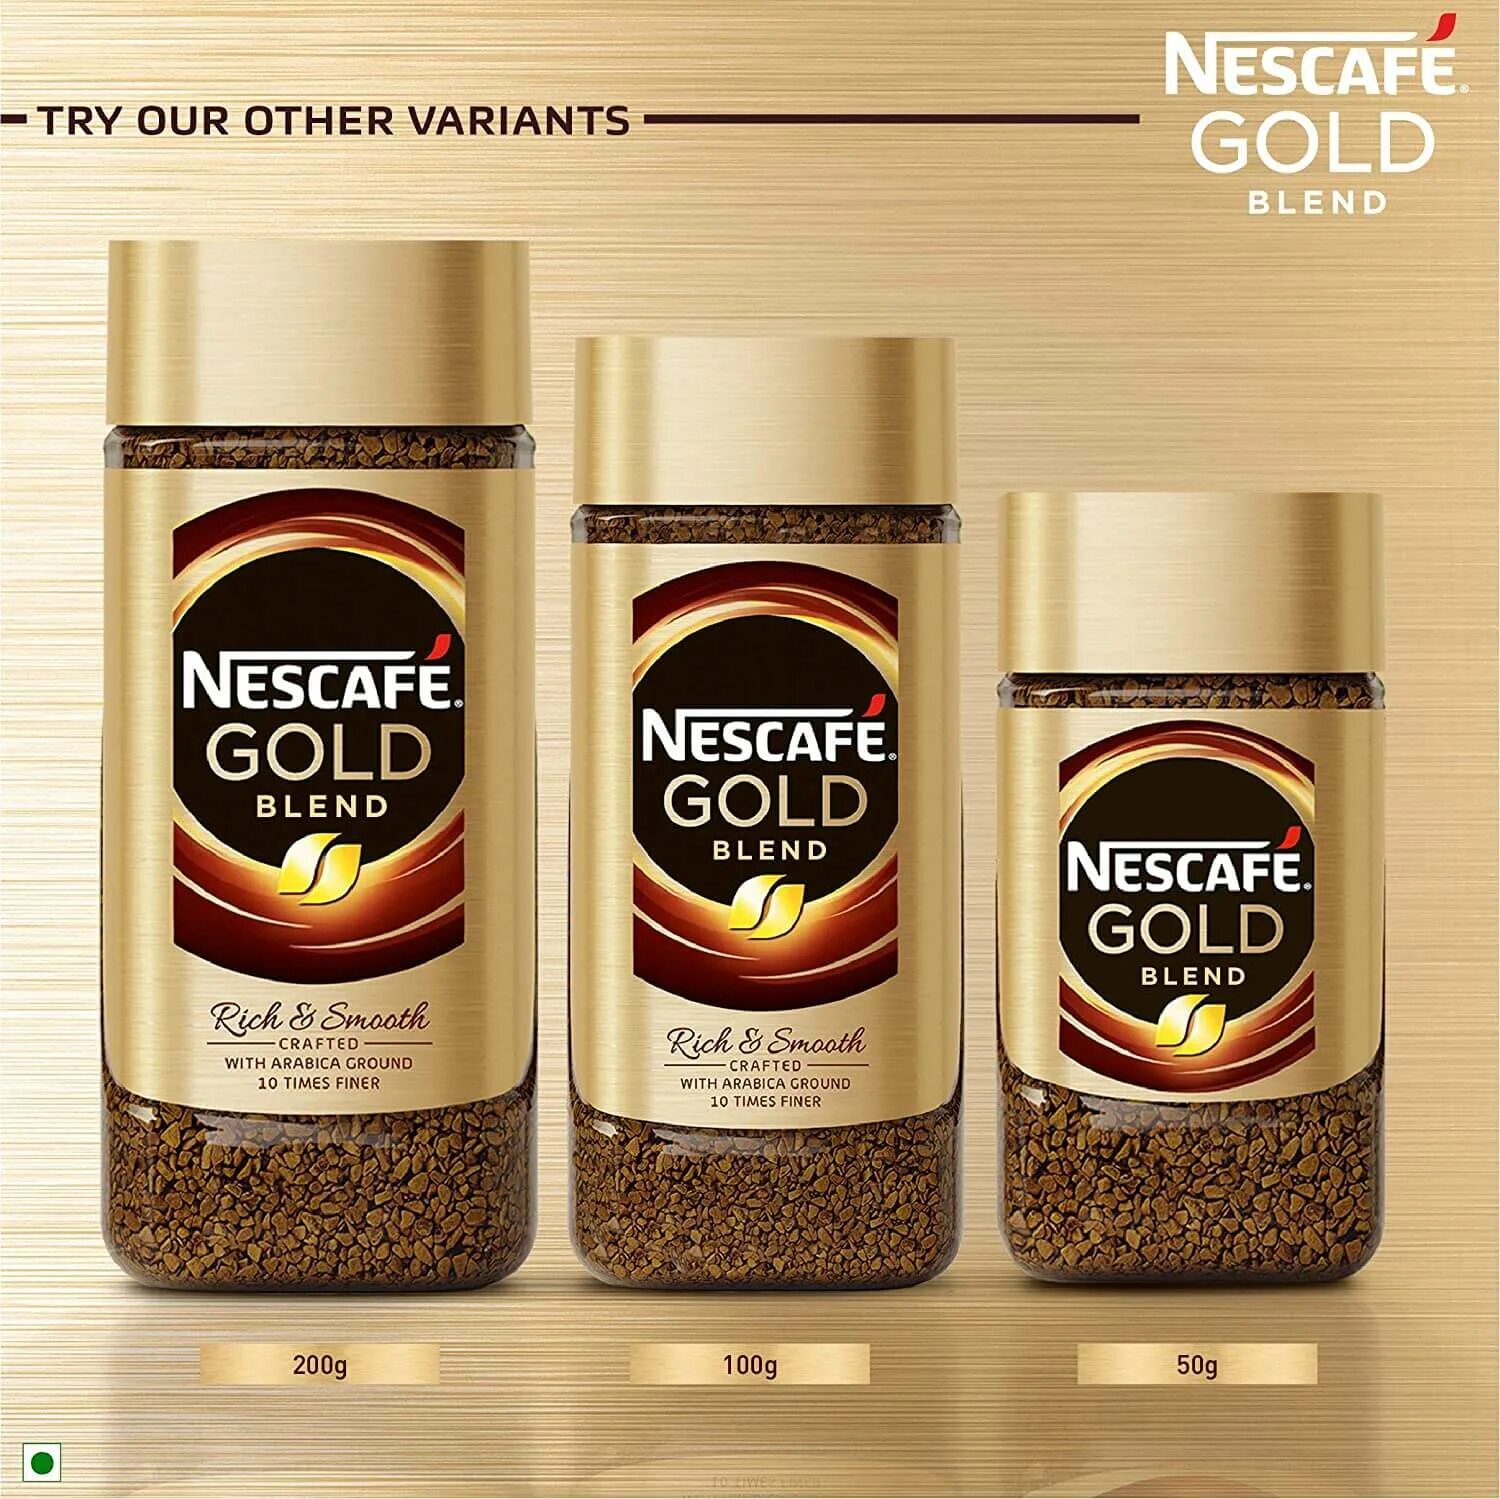 Нескафе Голд Бленд. Nescafe Gold порошковой кофе. Nescafe Gold Rich&smooth. Nescafe Gold Premium Blend. Купить растворимый кофе на валберис